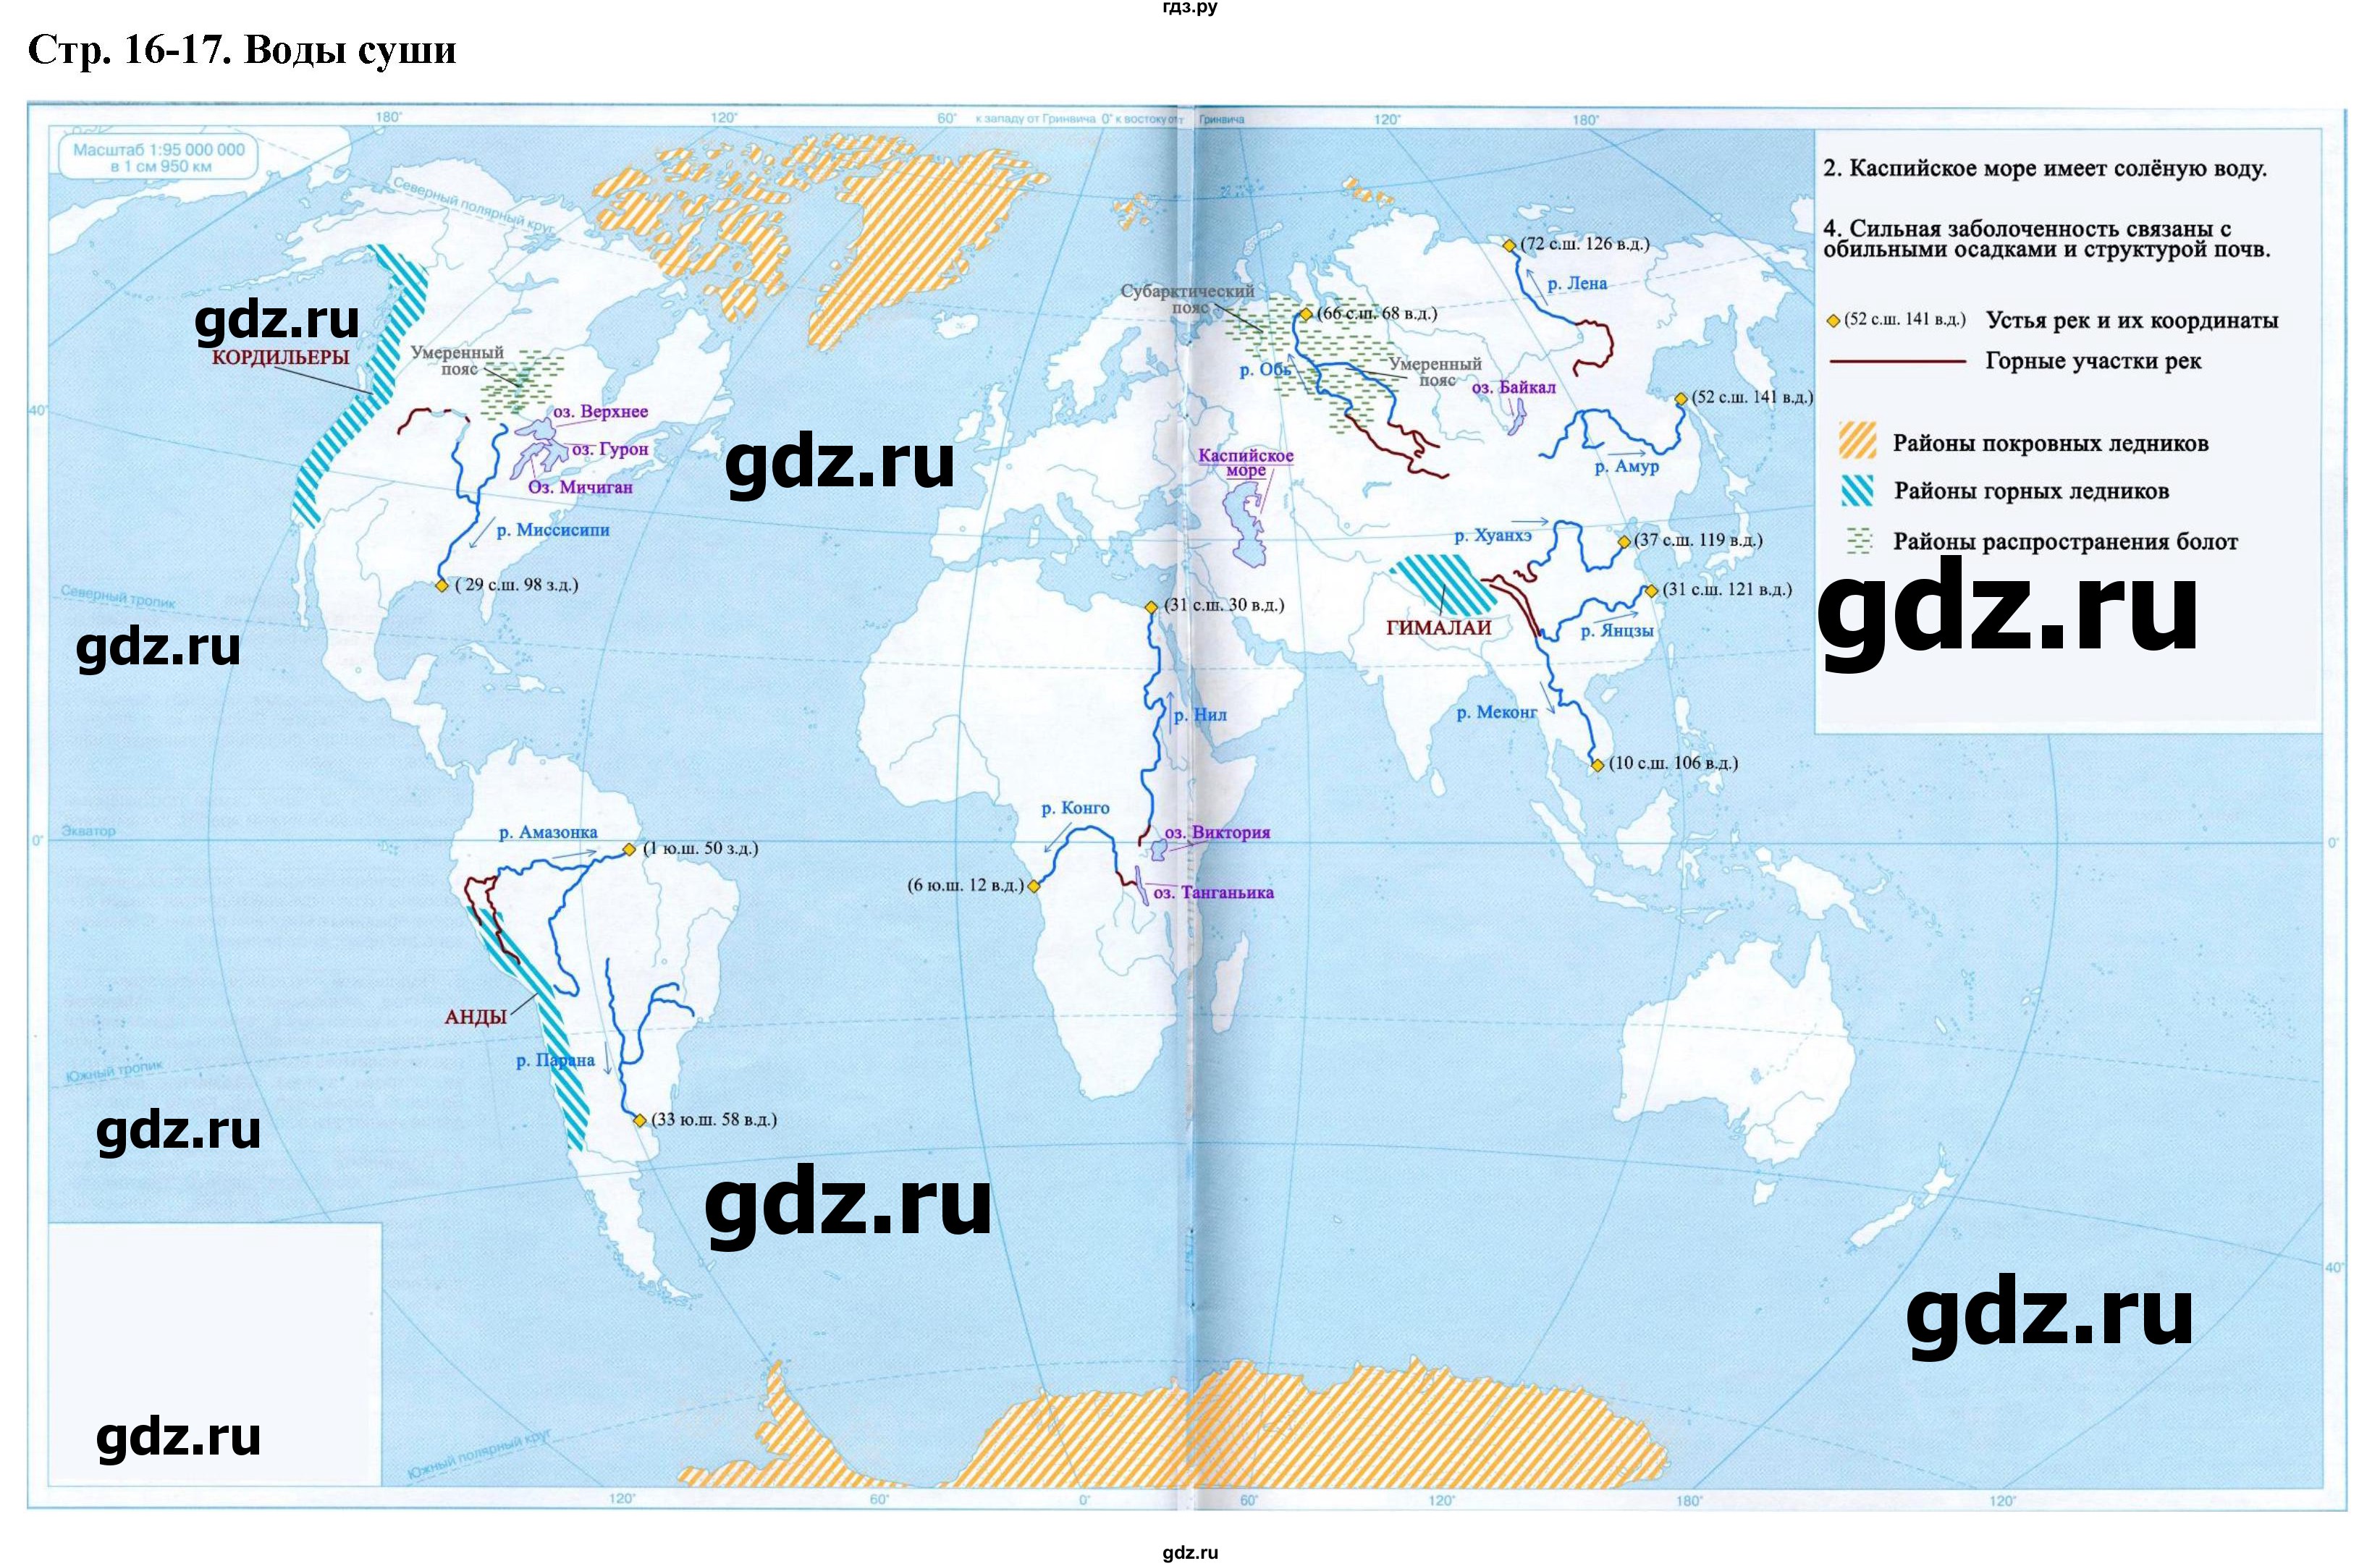 ГДЗ Страница 16-17 География 6 Класс Контурные Карты Румянцев.